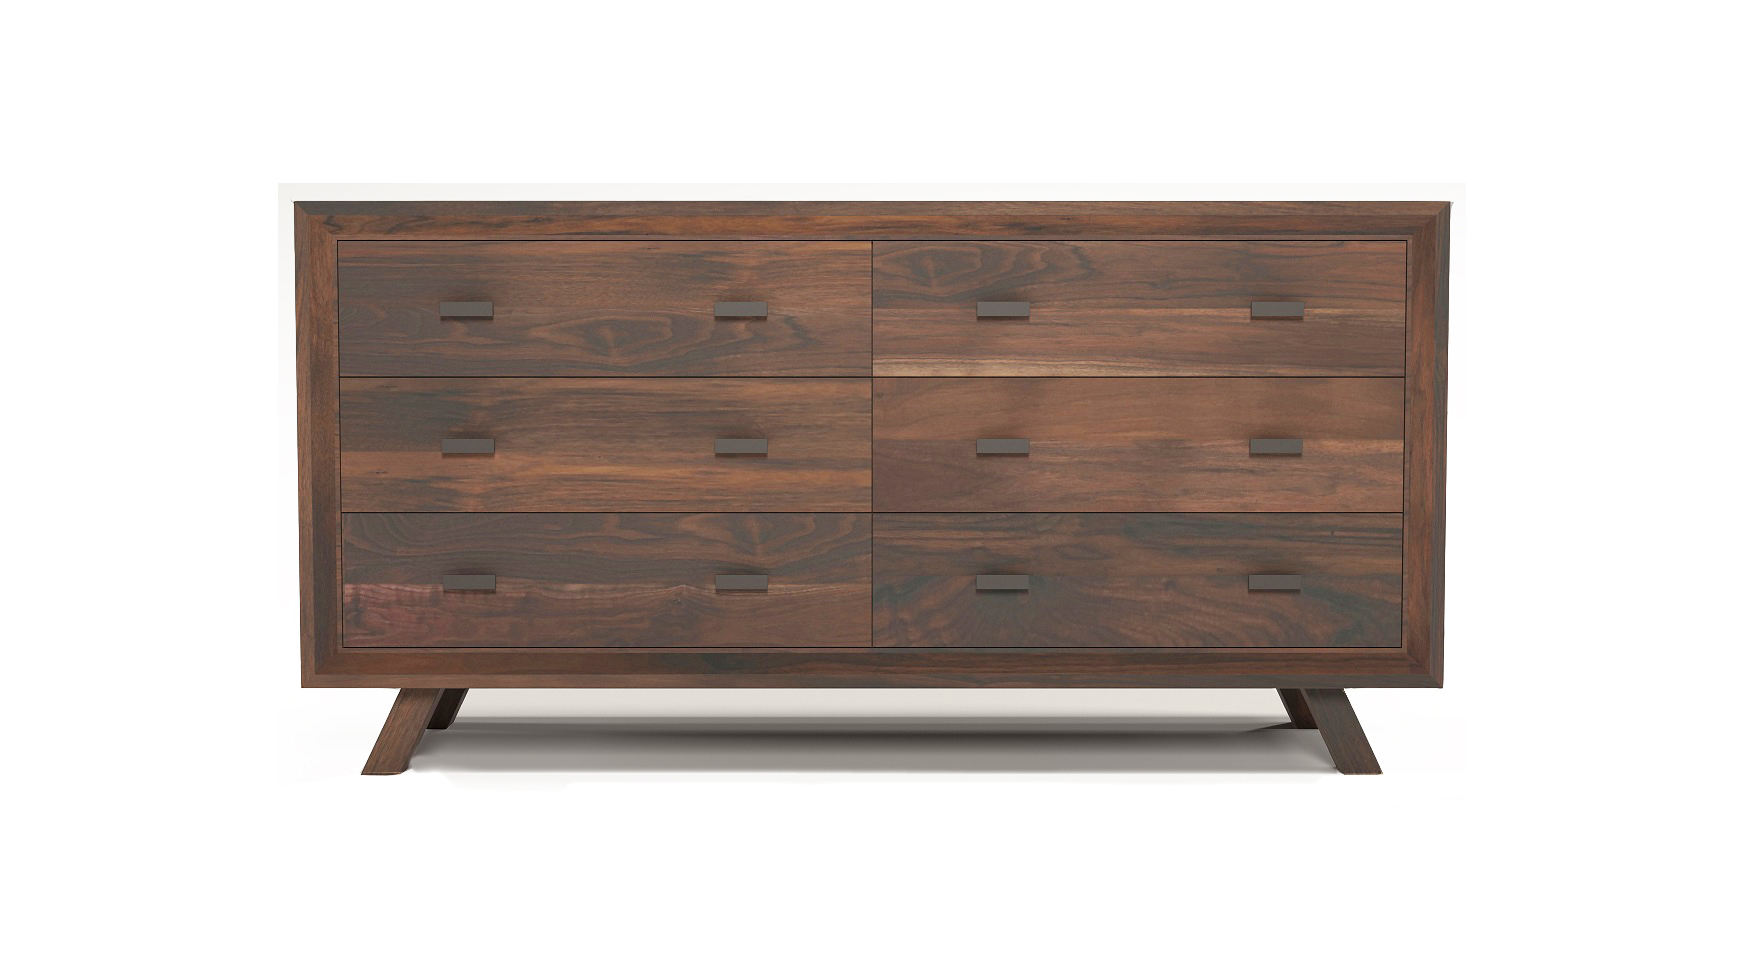 Solid walnut 60" fine furniture six drawer dresser